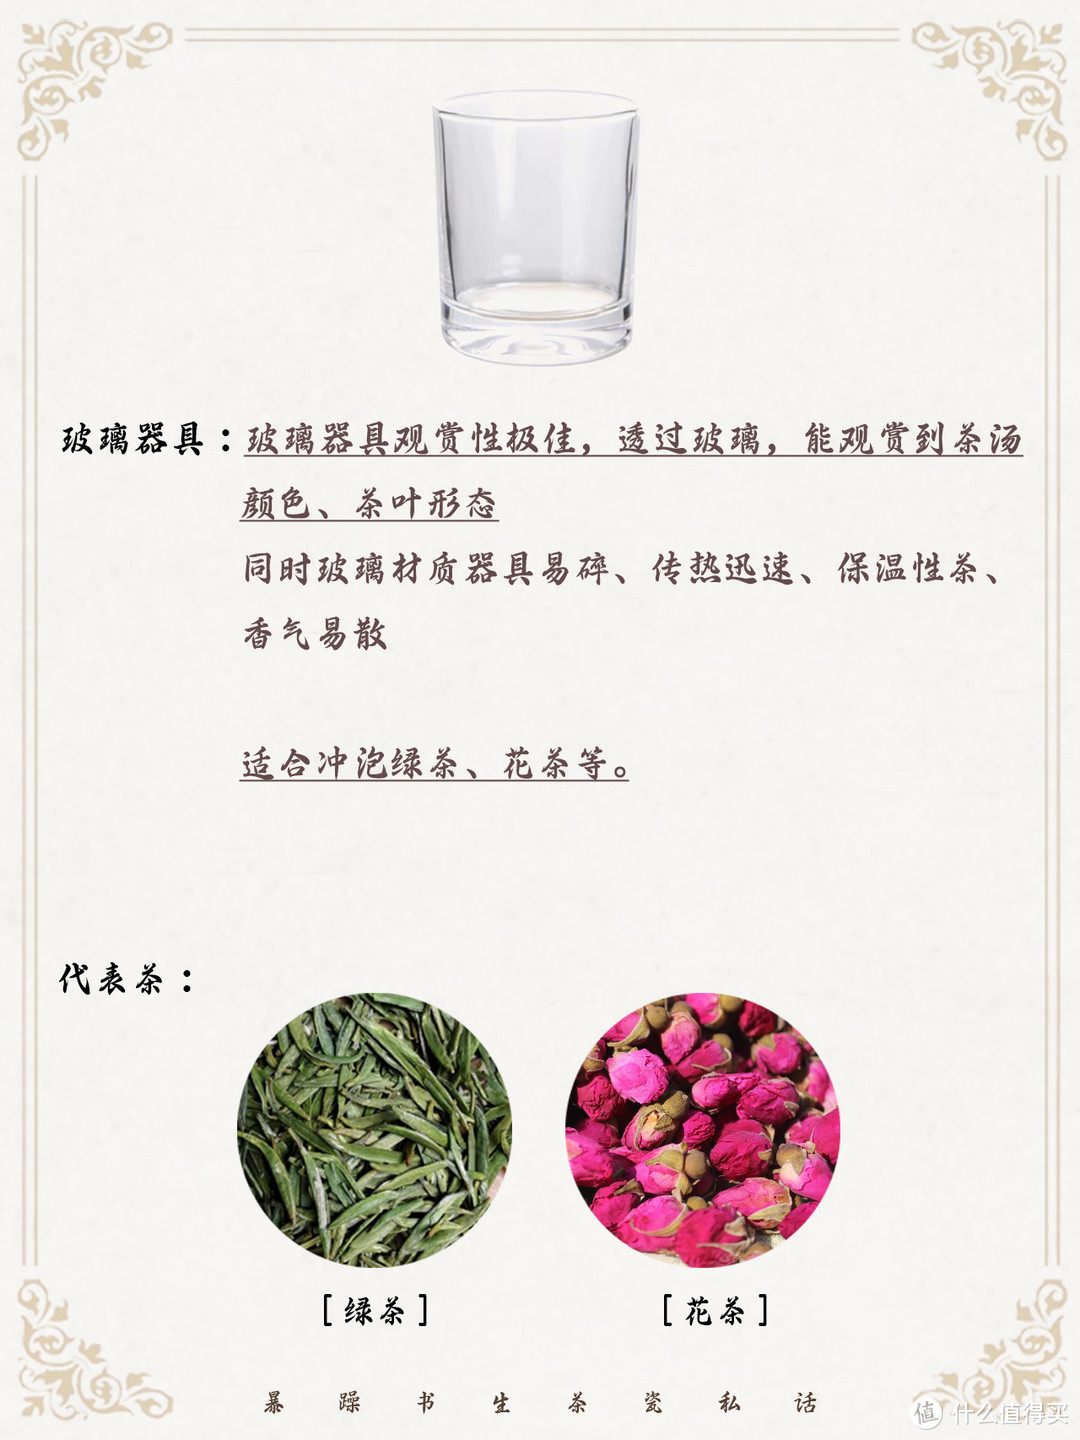 茶道入门合集：不同茶叶应该如何搭配茶器